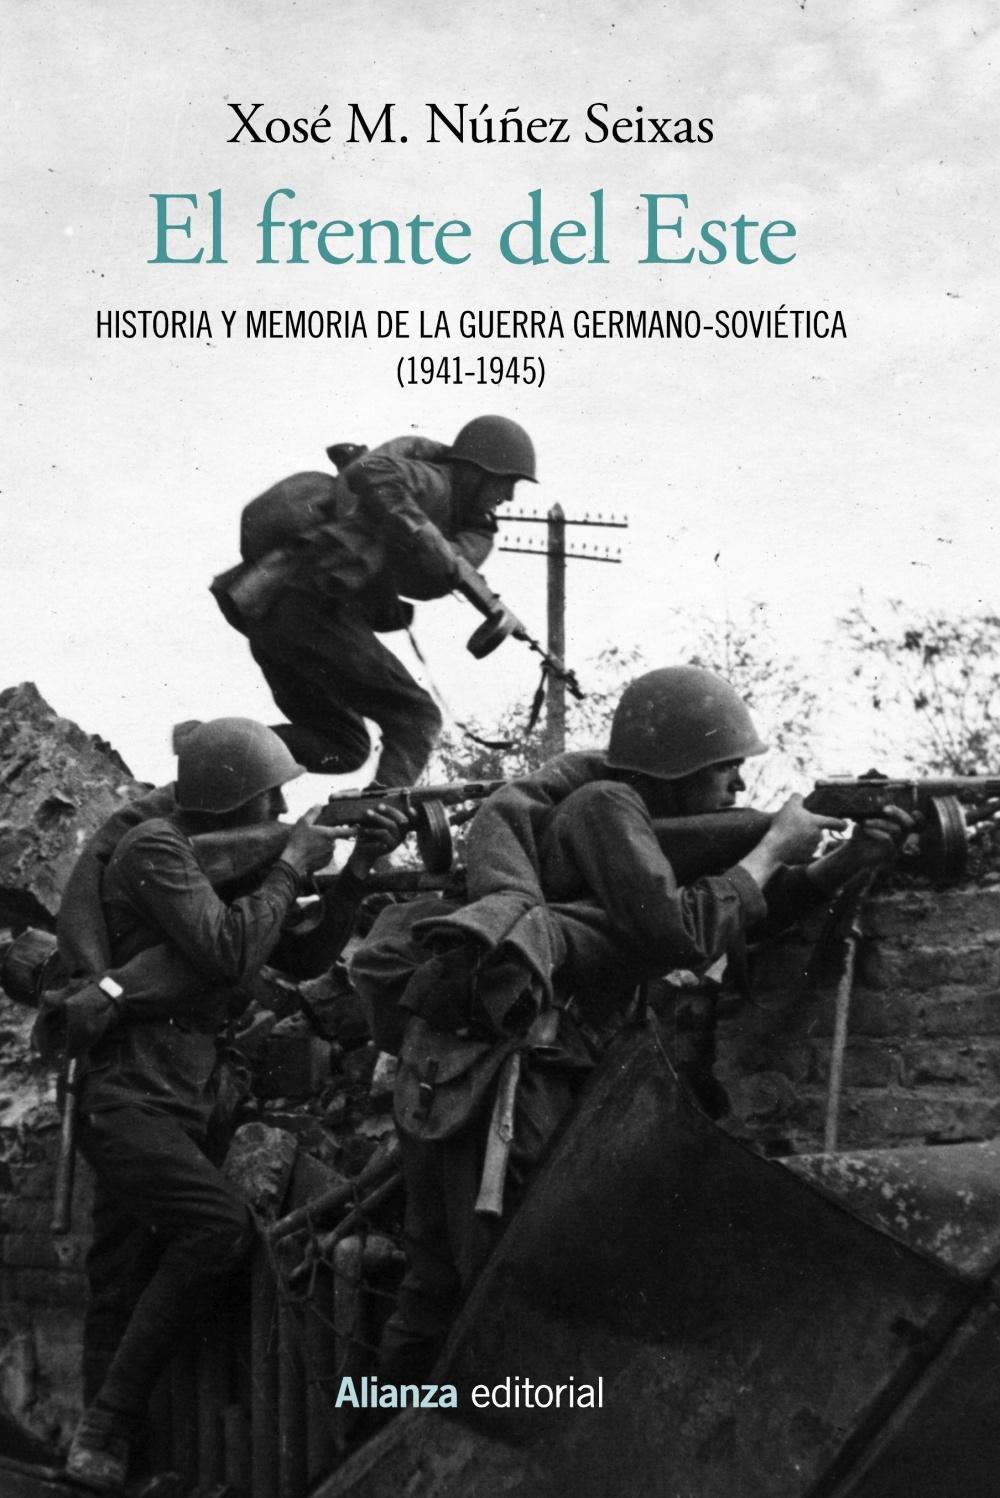 El frente del Este "Historia y memoria de la guerra germano-soviética (1941-1945)". 